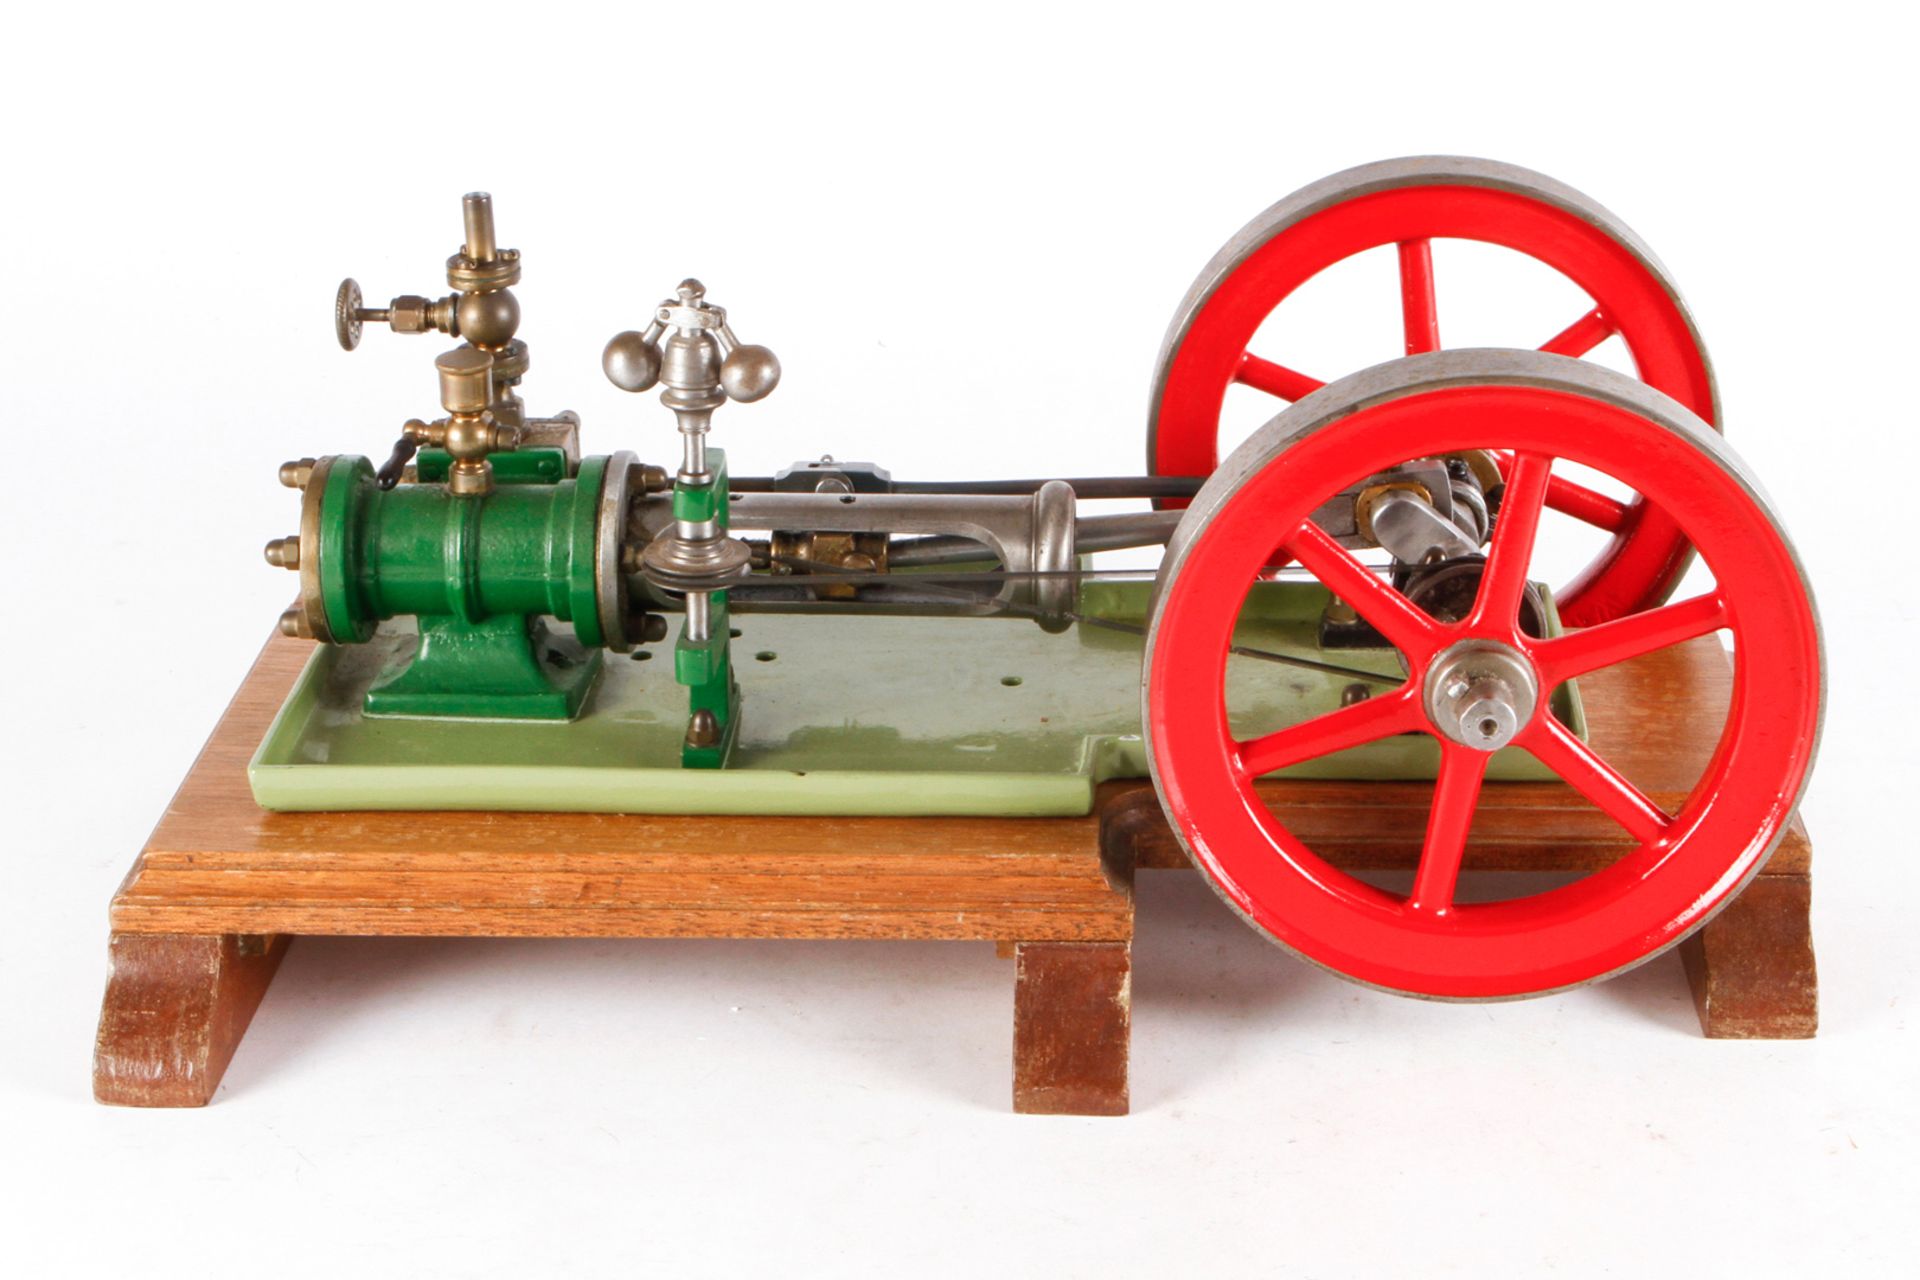 Maschinenteil, Guss, auf Holzsockel, mit feststehendem Zylinder, 2 gr. Schwungrädern (D 16) und